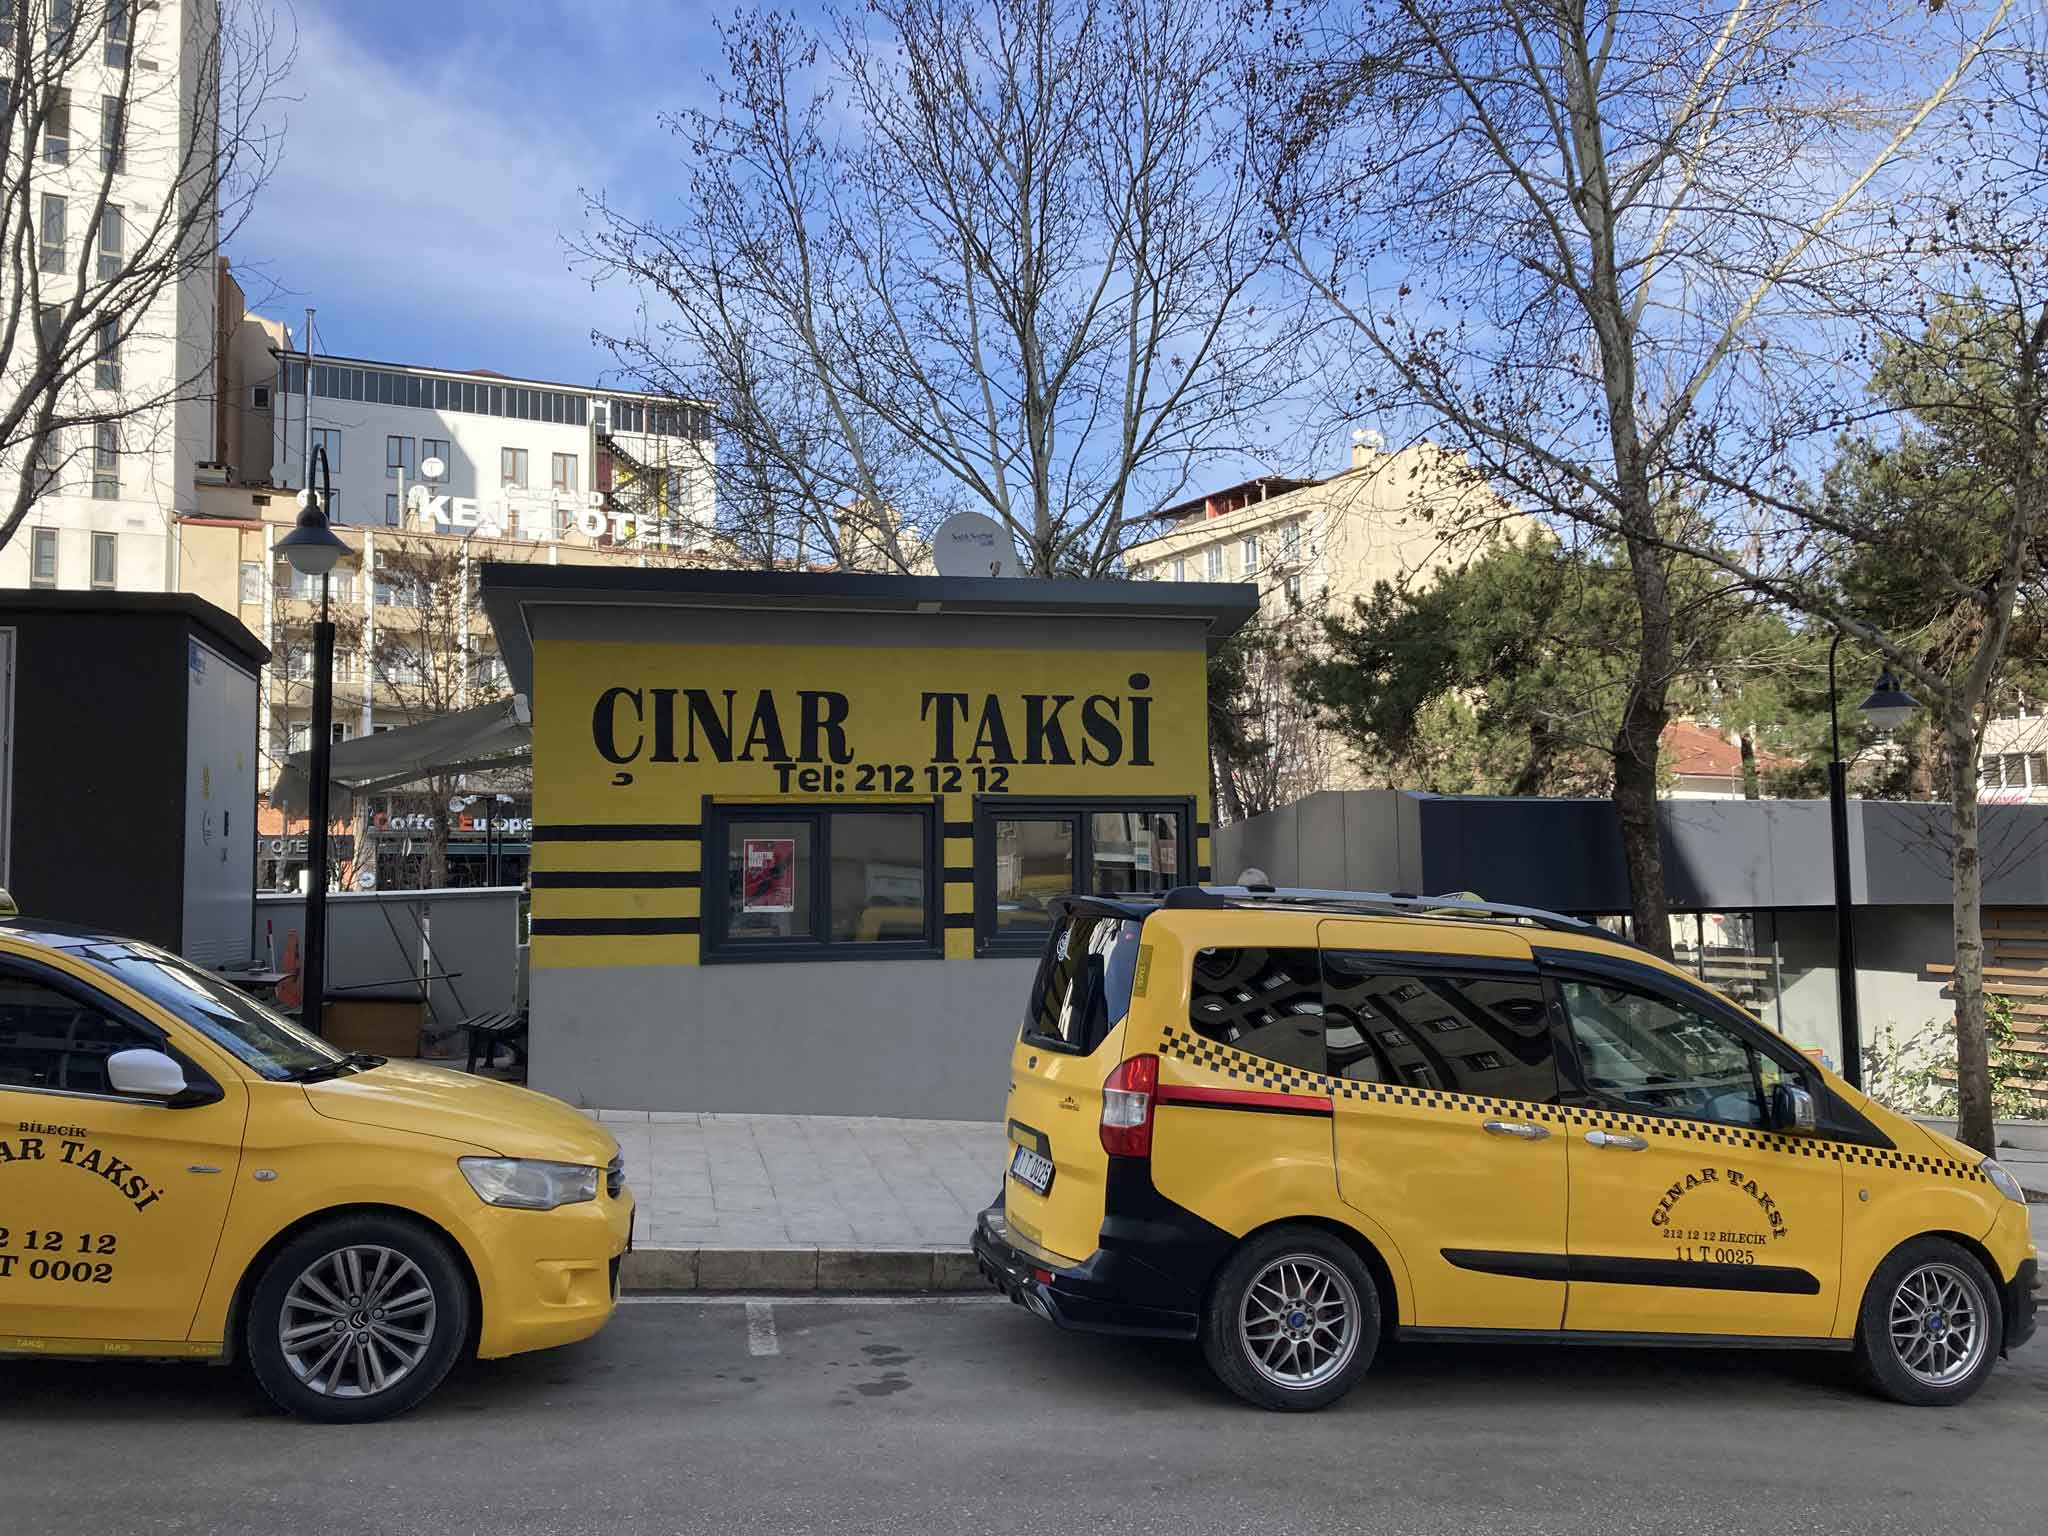 Bilecik_Taksi_Bilecik_Çınar_Taksi